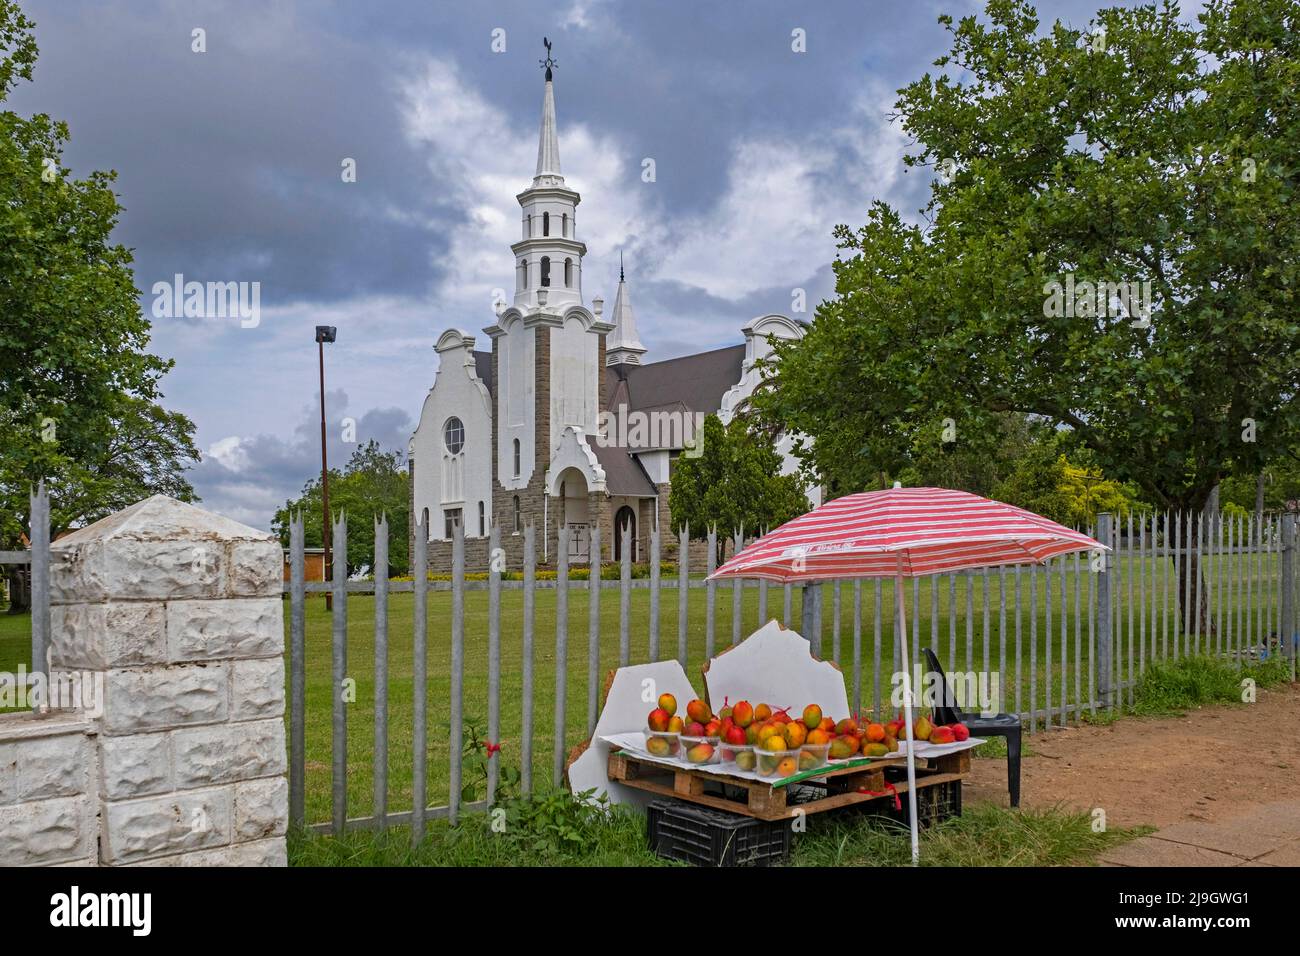 Stand de fruits devant l'église réformée néerlandaise de la ville de Piet Retief / Mkhondo, Gert Sibande, province de Mpumalanga, Afrique du Sud Banque D'Images